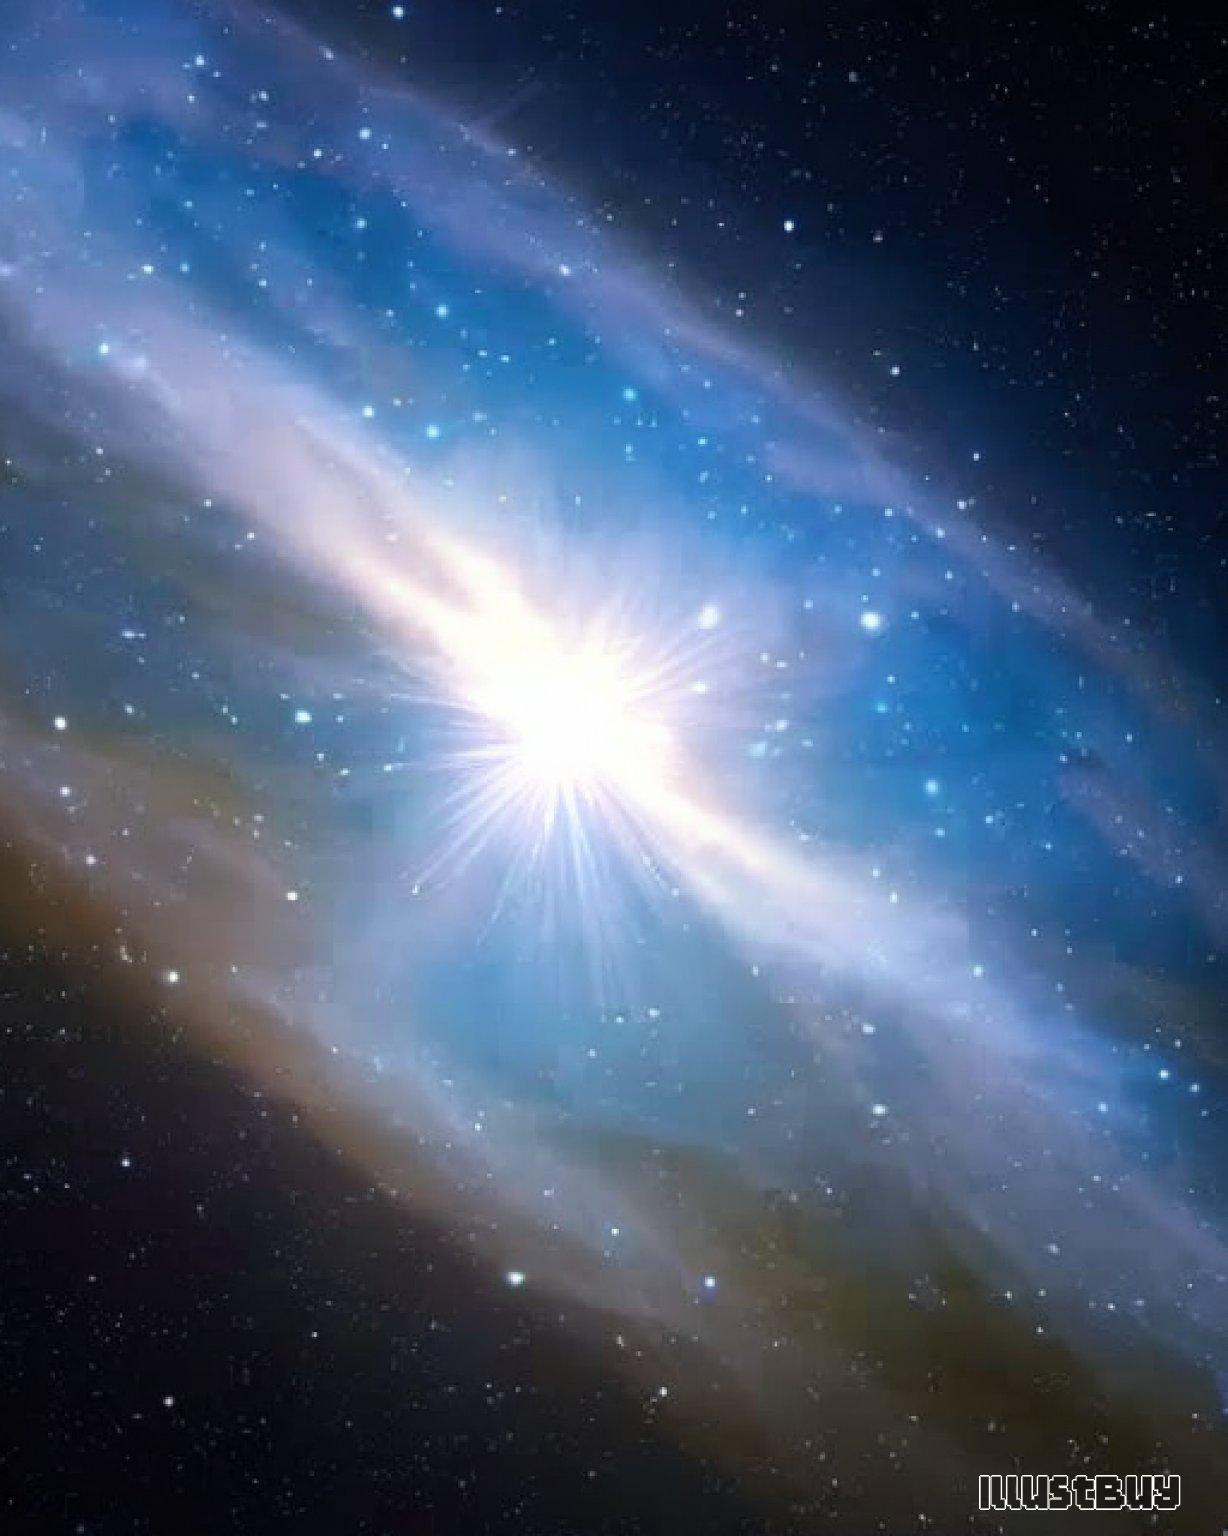 從星雲中誕生的新星